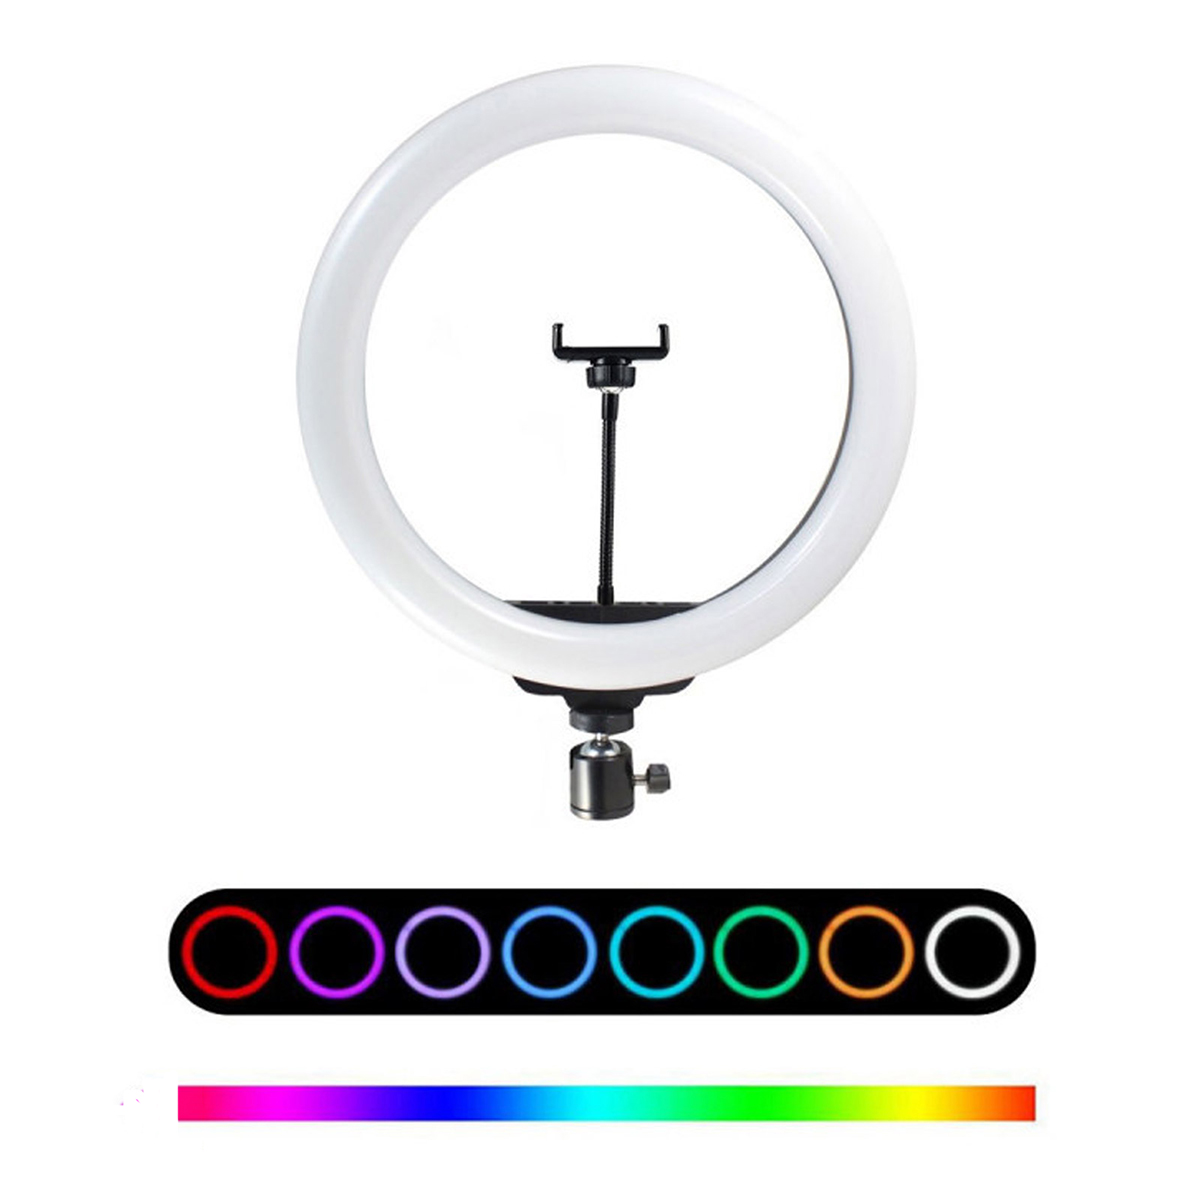 Кольцевая светодиодная RGB лампа MJ26, 26 см, 25 Вт, со штативом 1.9 м, 15 цветовых схем, 10 ступеней яркости